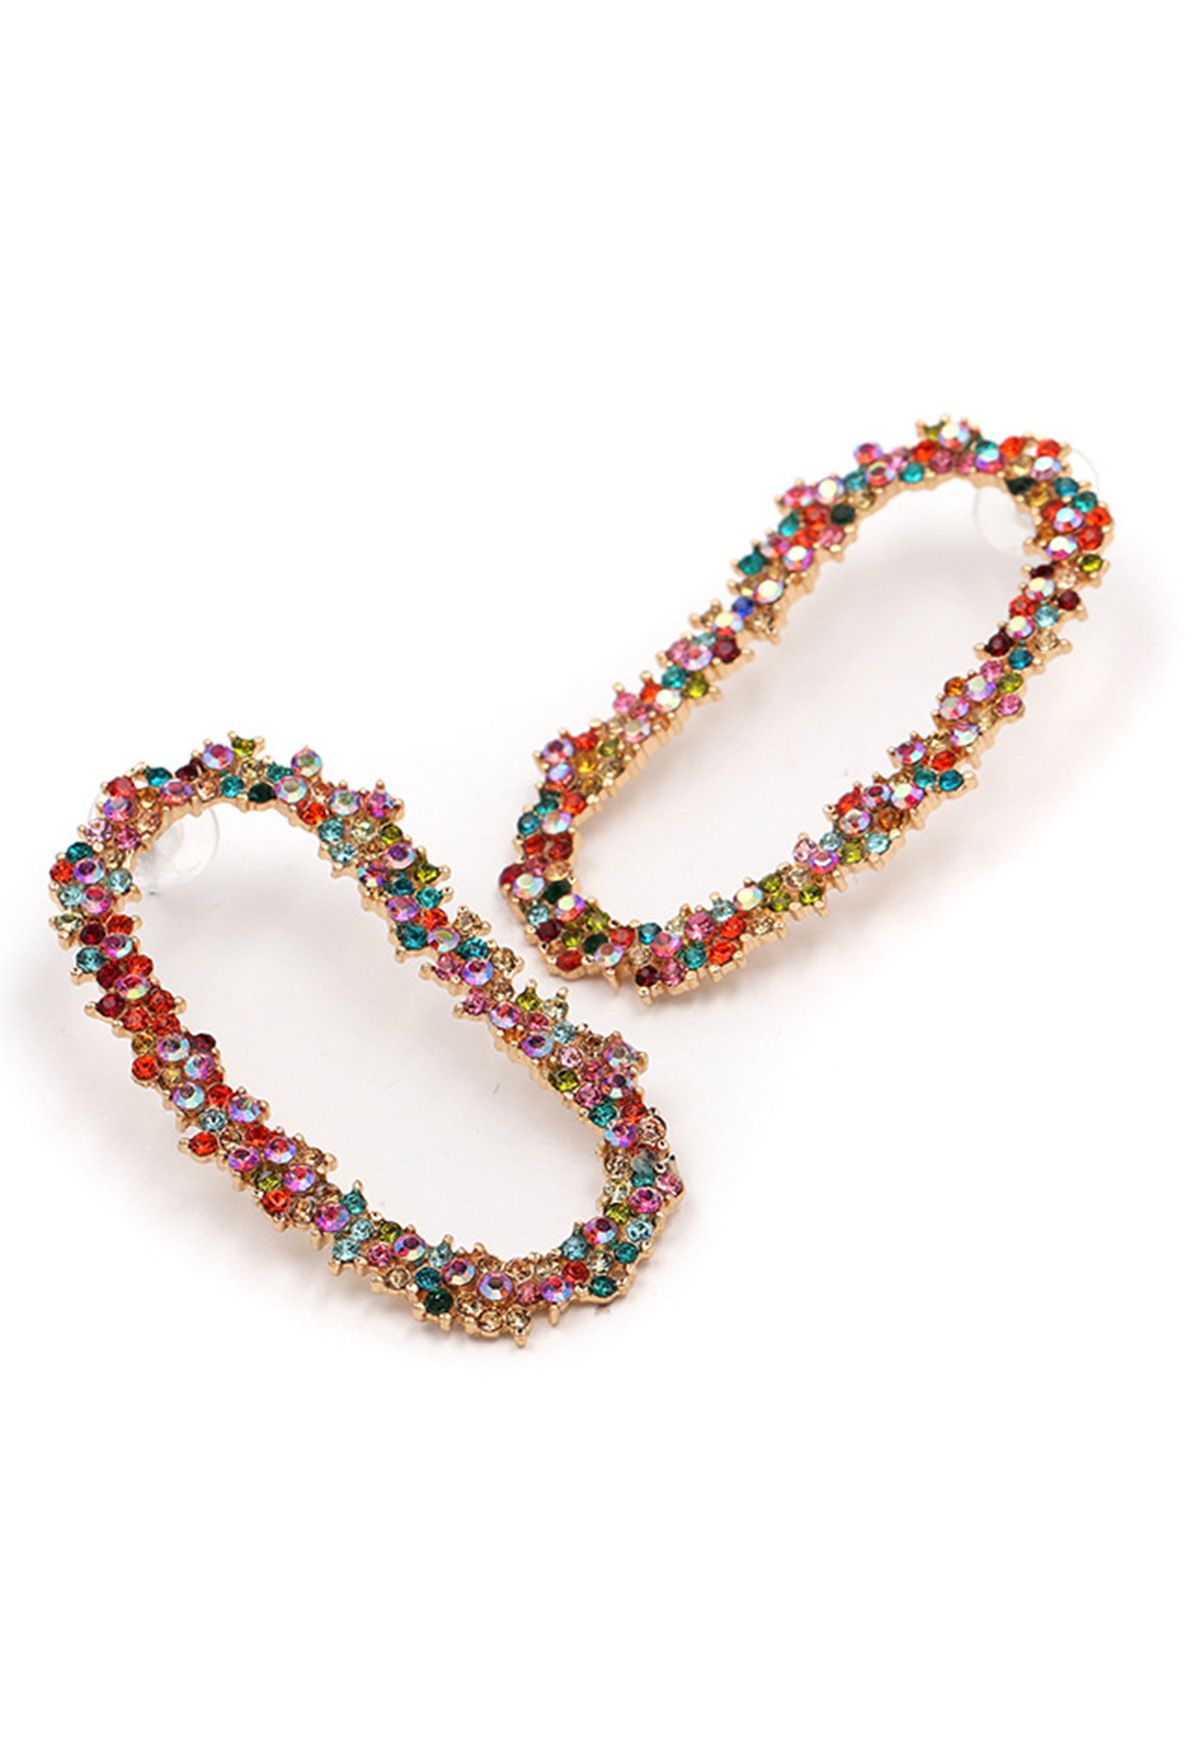 Full Rhinestone Oblong Earrings in Multicolor